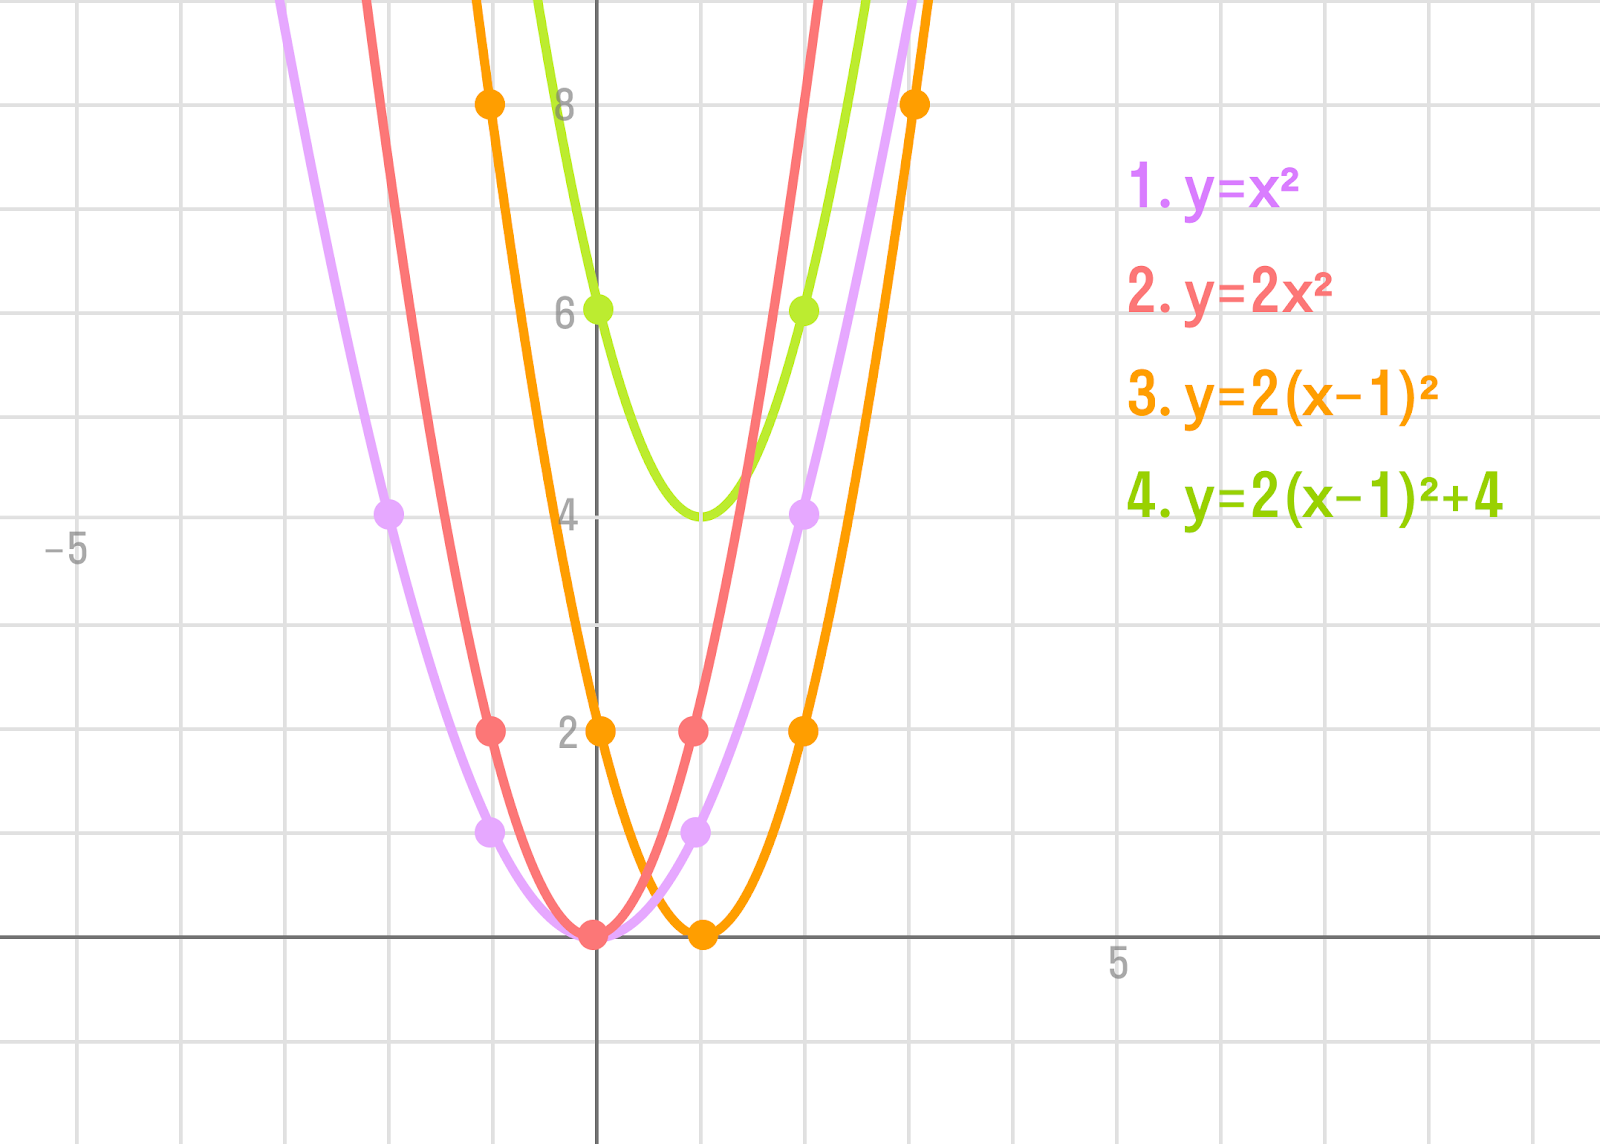 график параболы для каждого случая уравнения y = a * (x - x₀)<sup>2</sup> + y₀